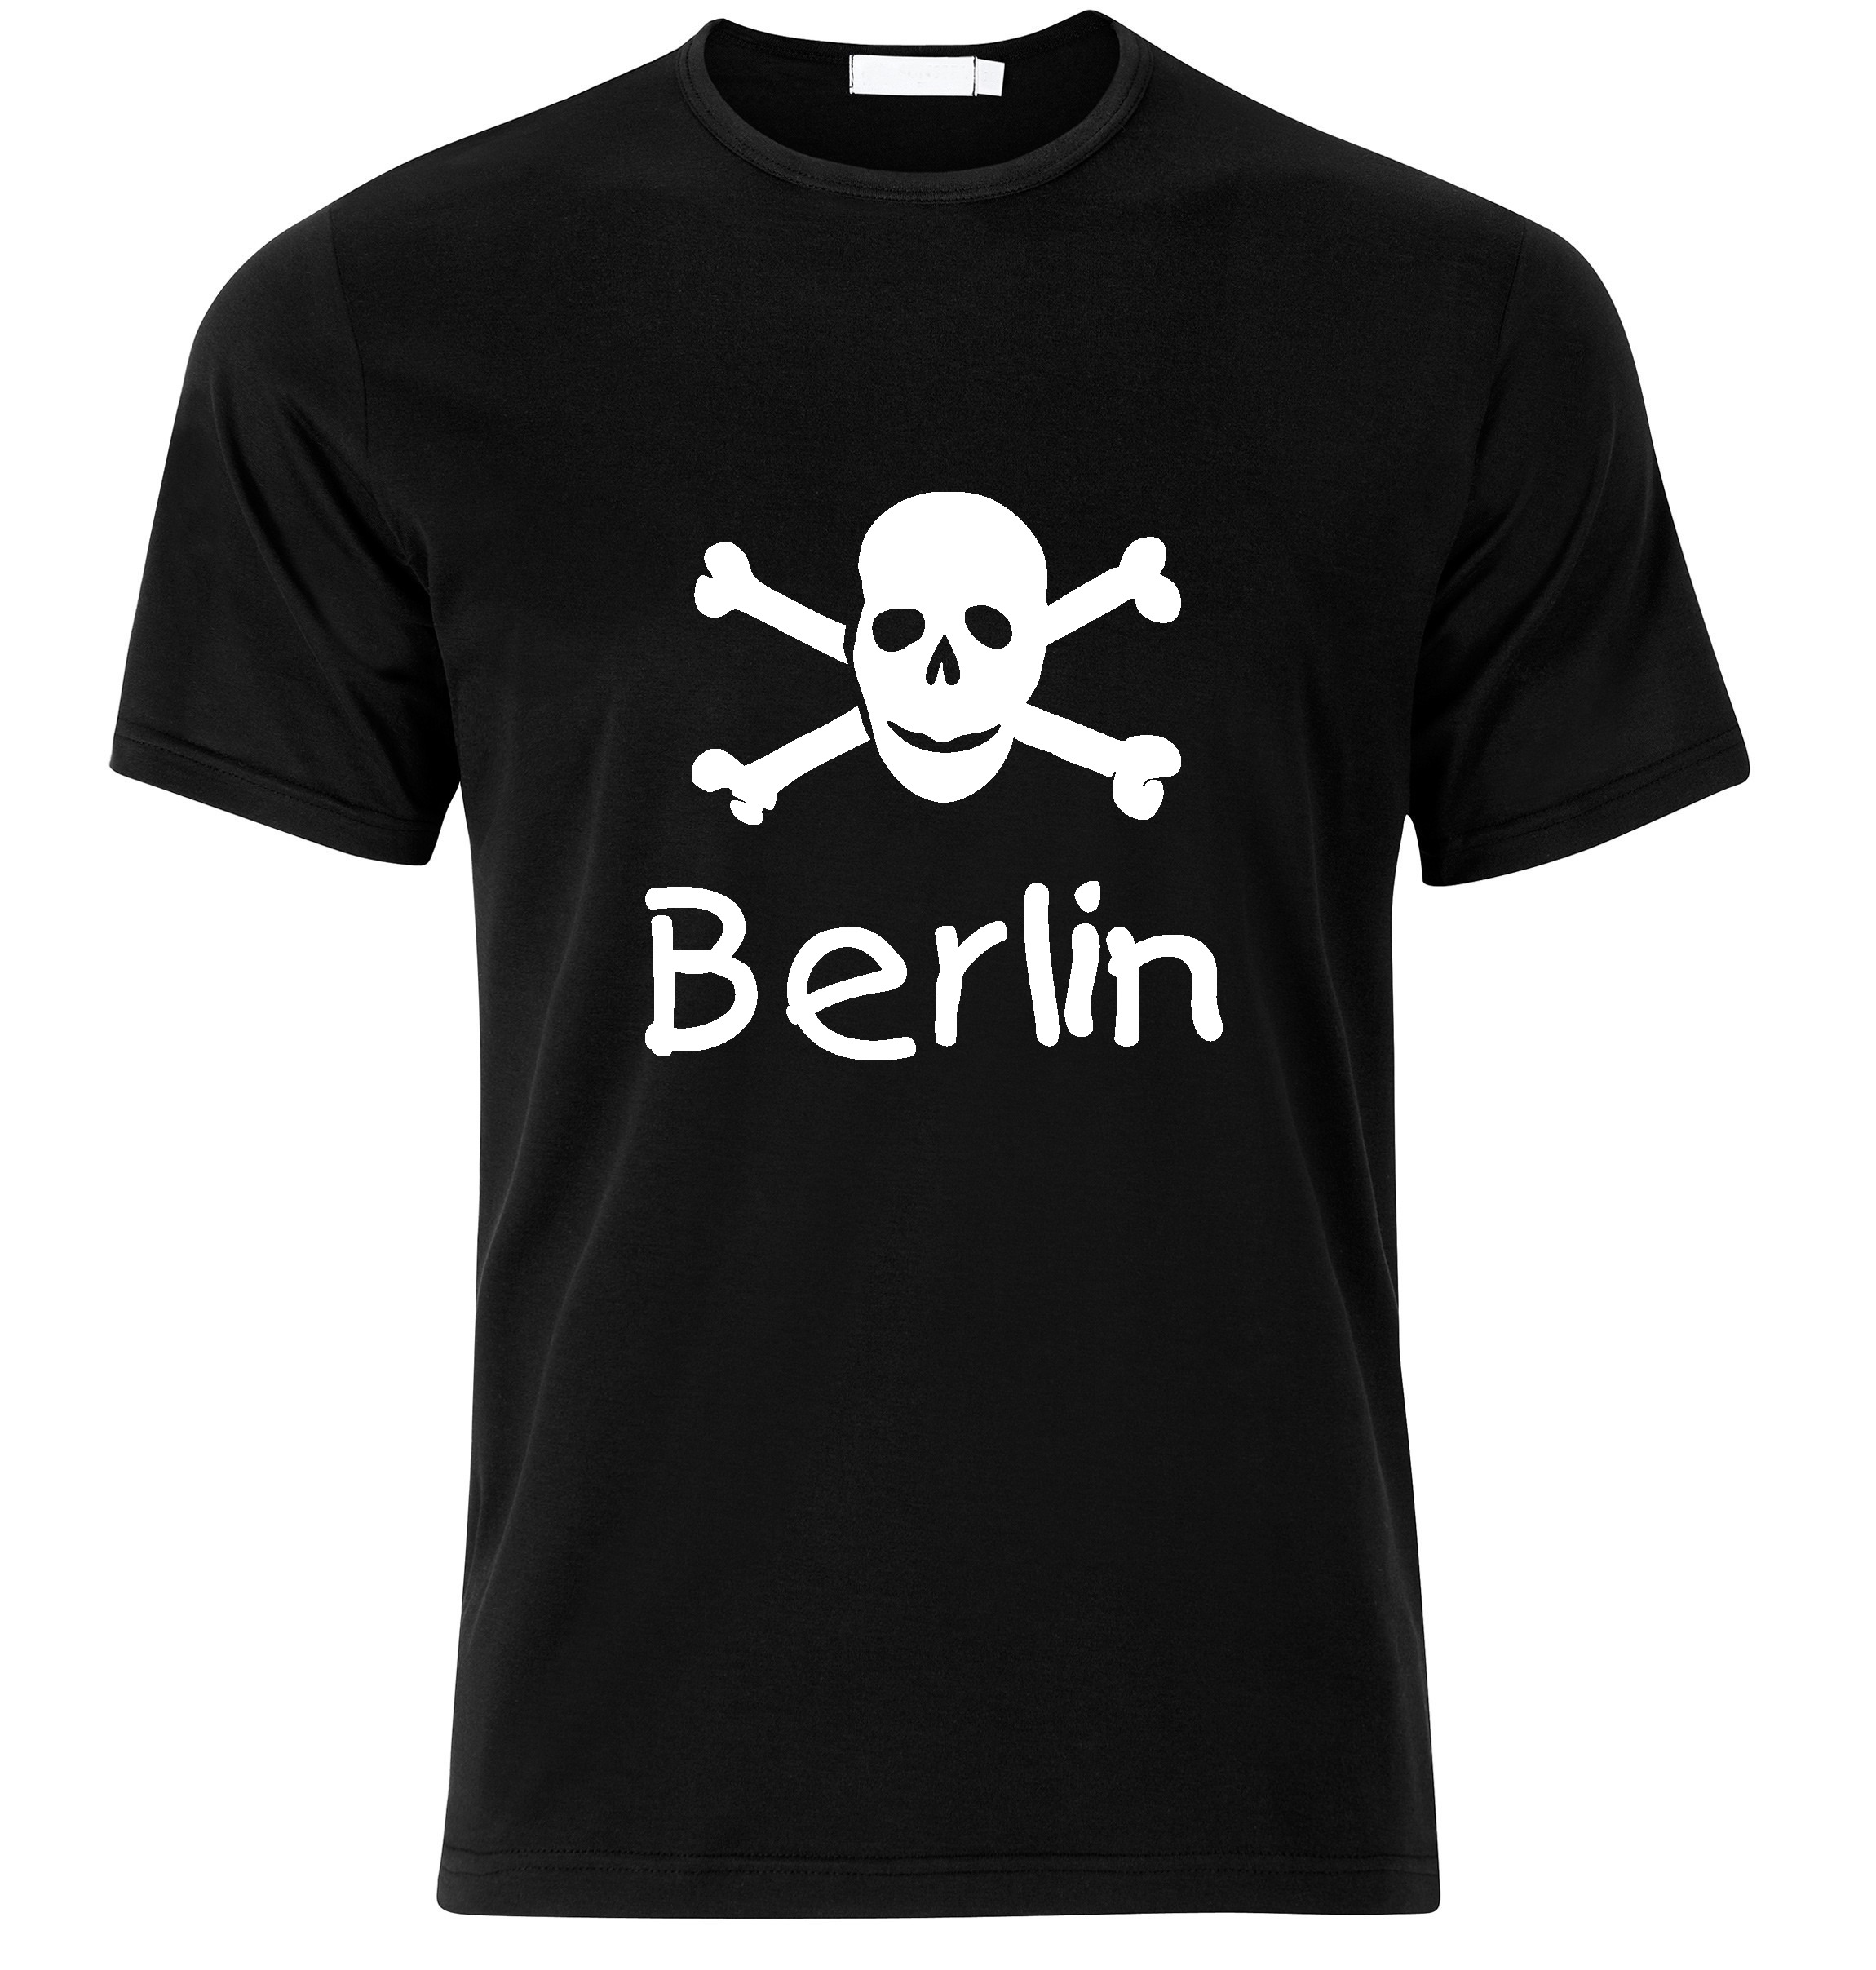 T-Shirt Berlin Jolly Roger, Totenkopf